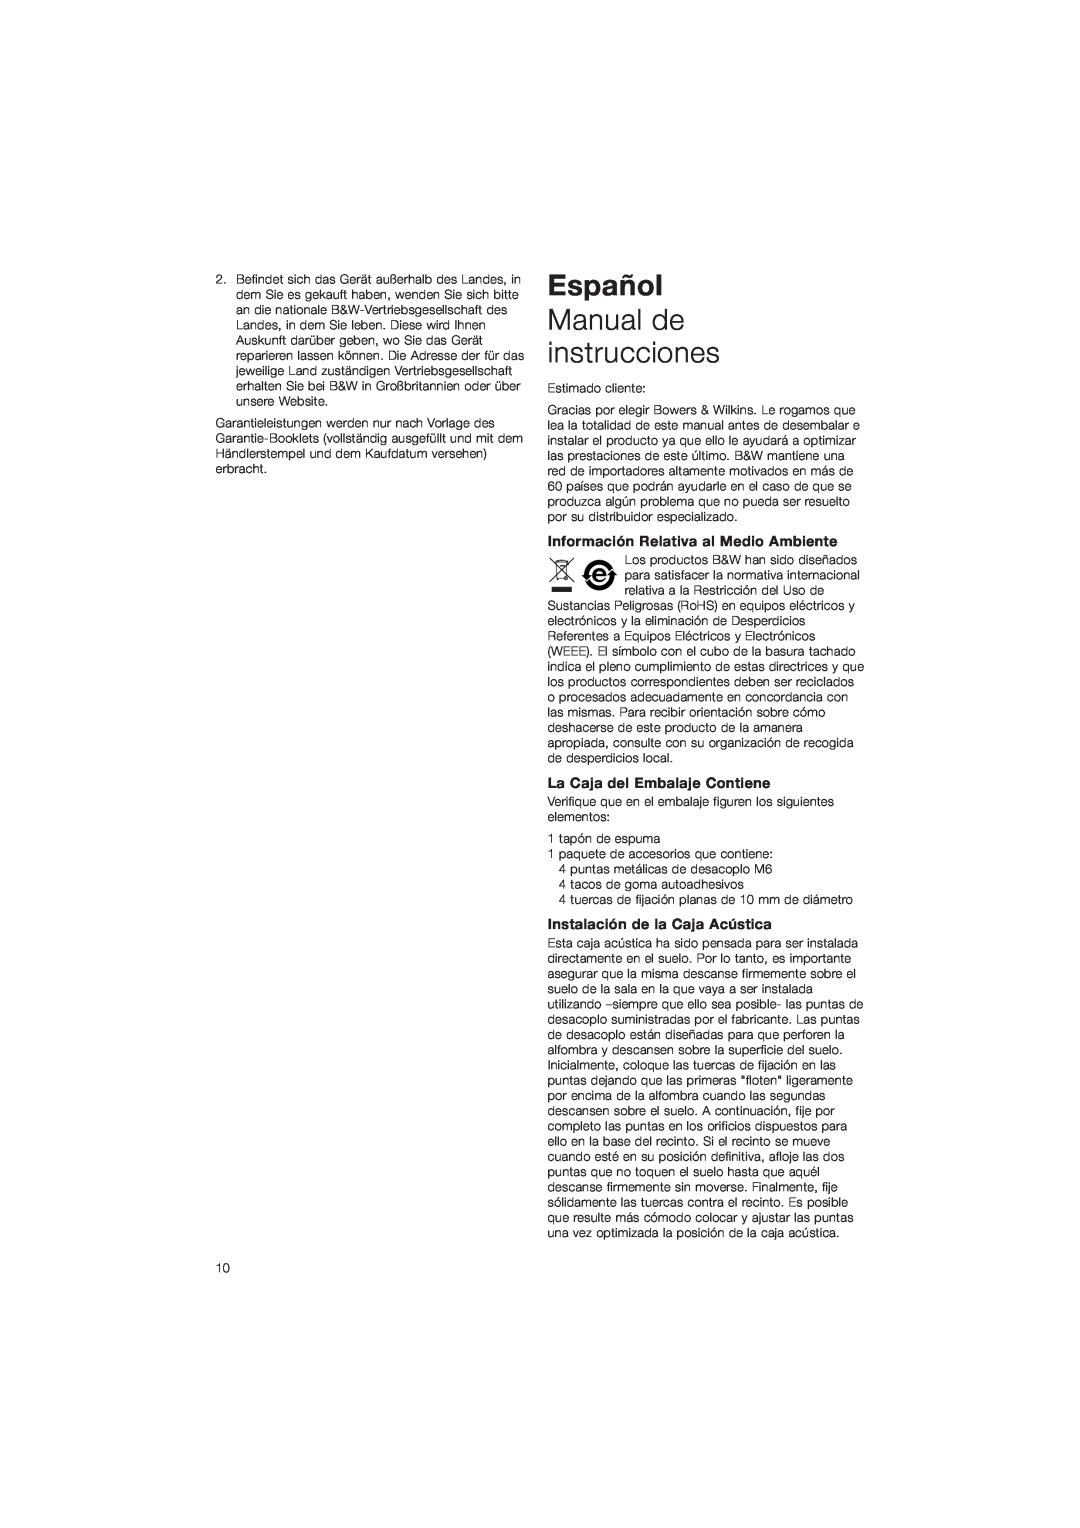 Bowers & Wilkins CM9 owner manual Español, Manual de instrucciones, Información Relativa al Medio Ambiente 